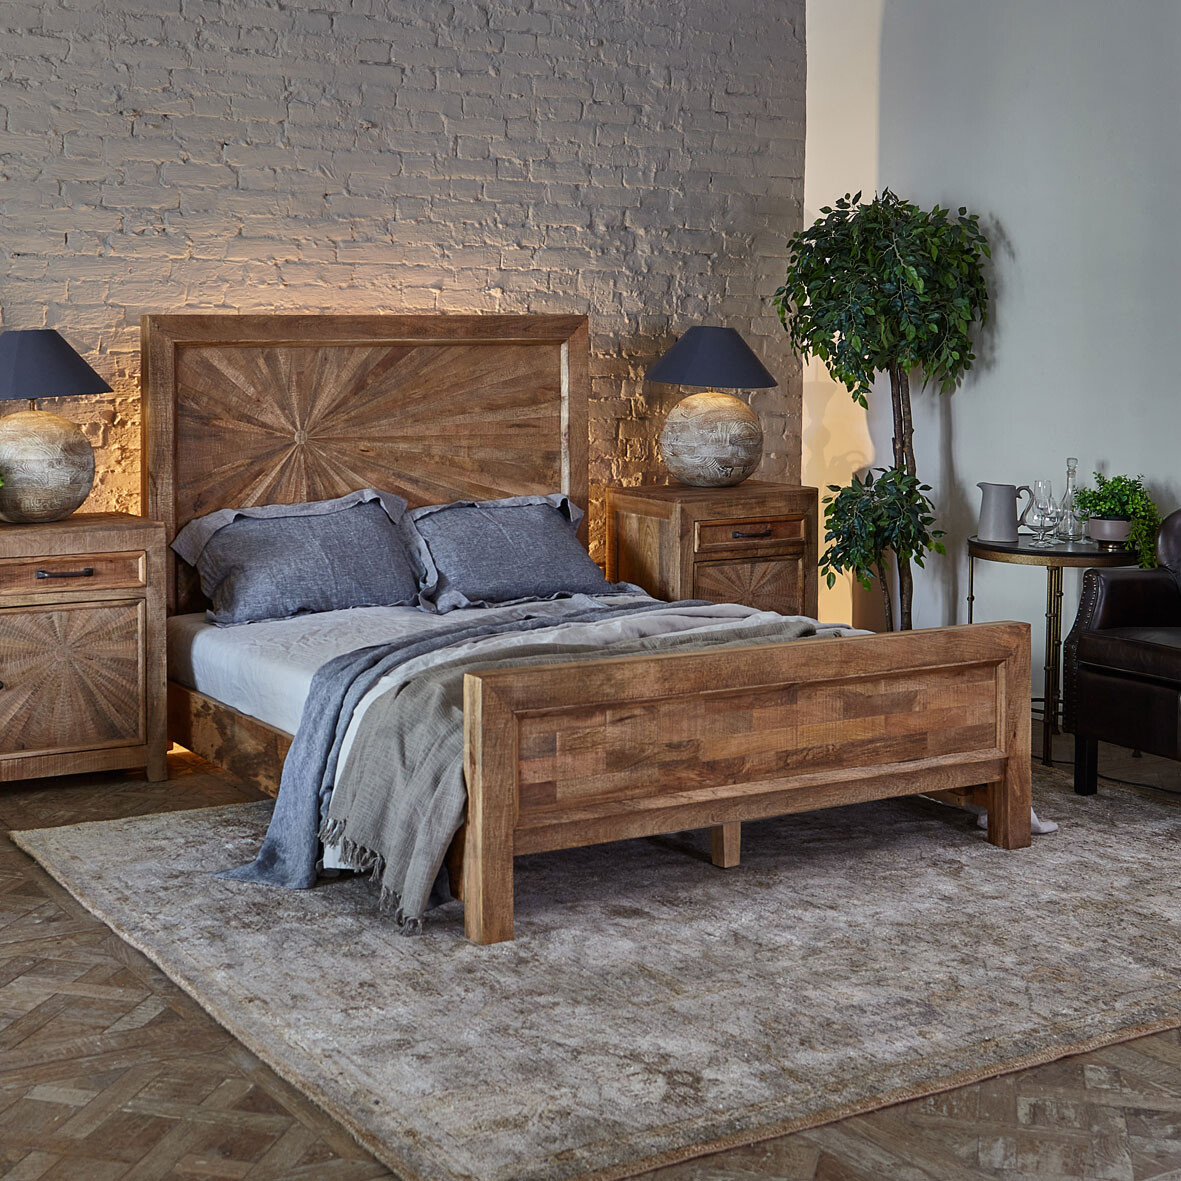 Деревянные двуспальные кровати: цены, купить кровать 2-х спальную из дерева в магазине МебельОК